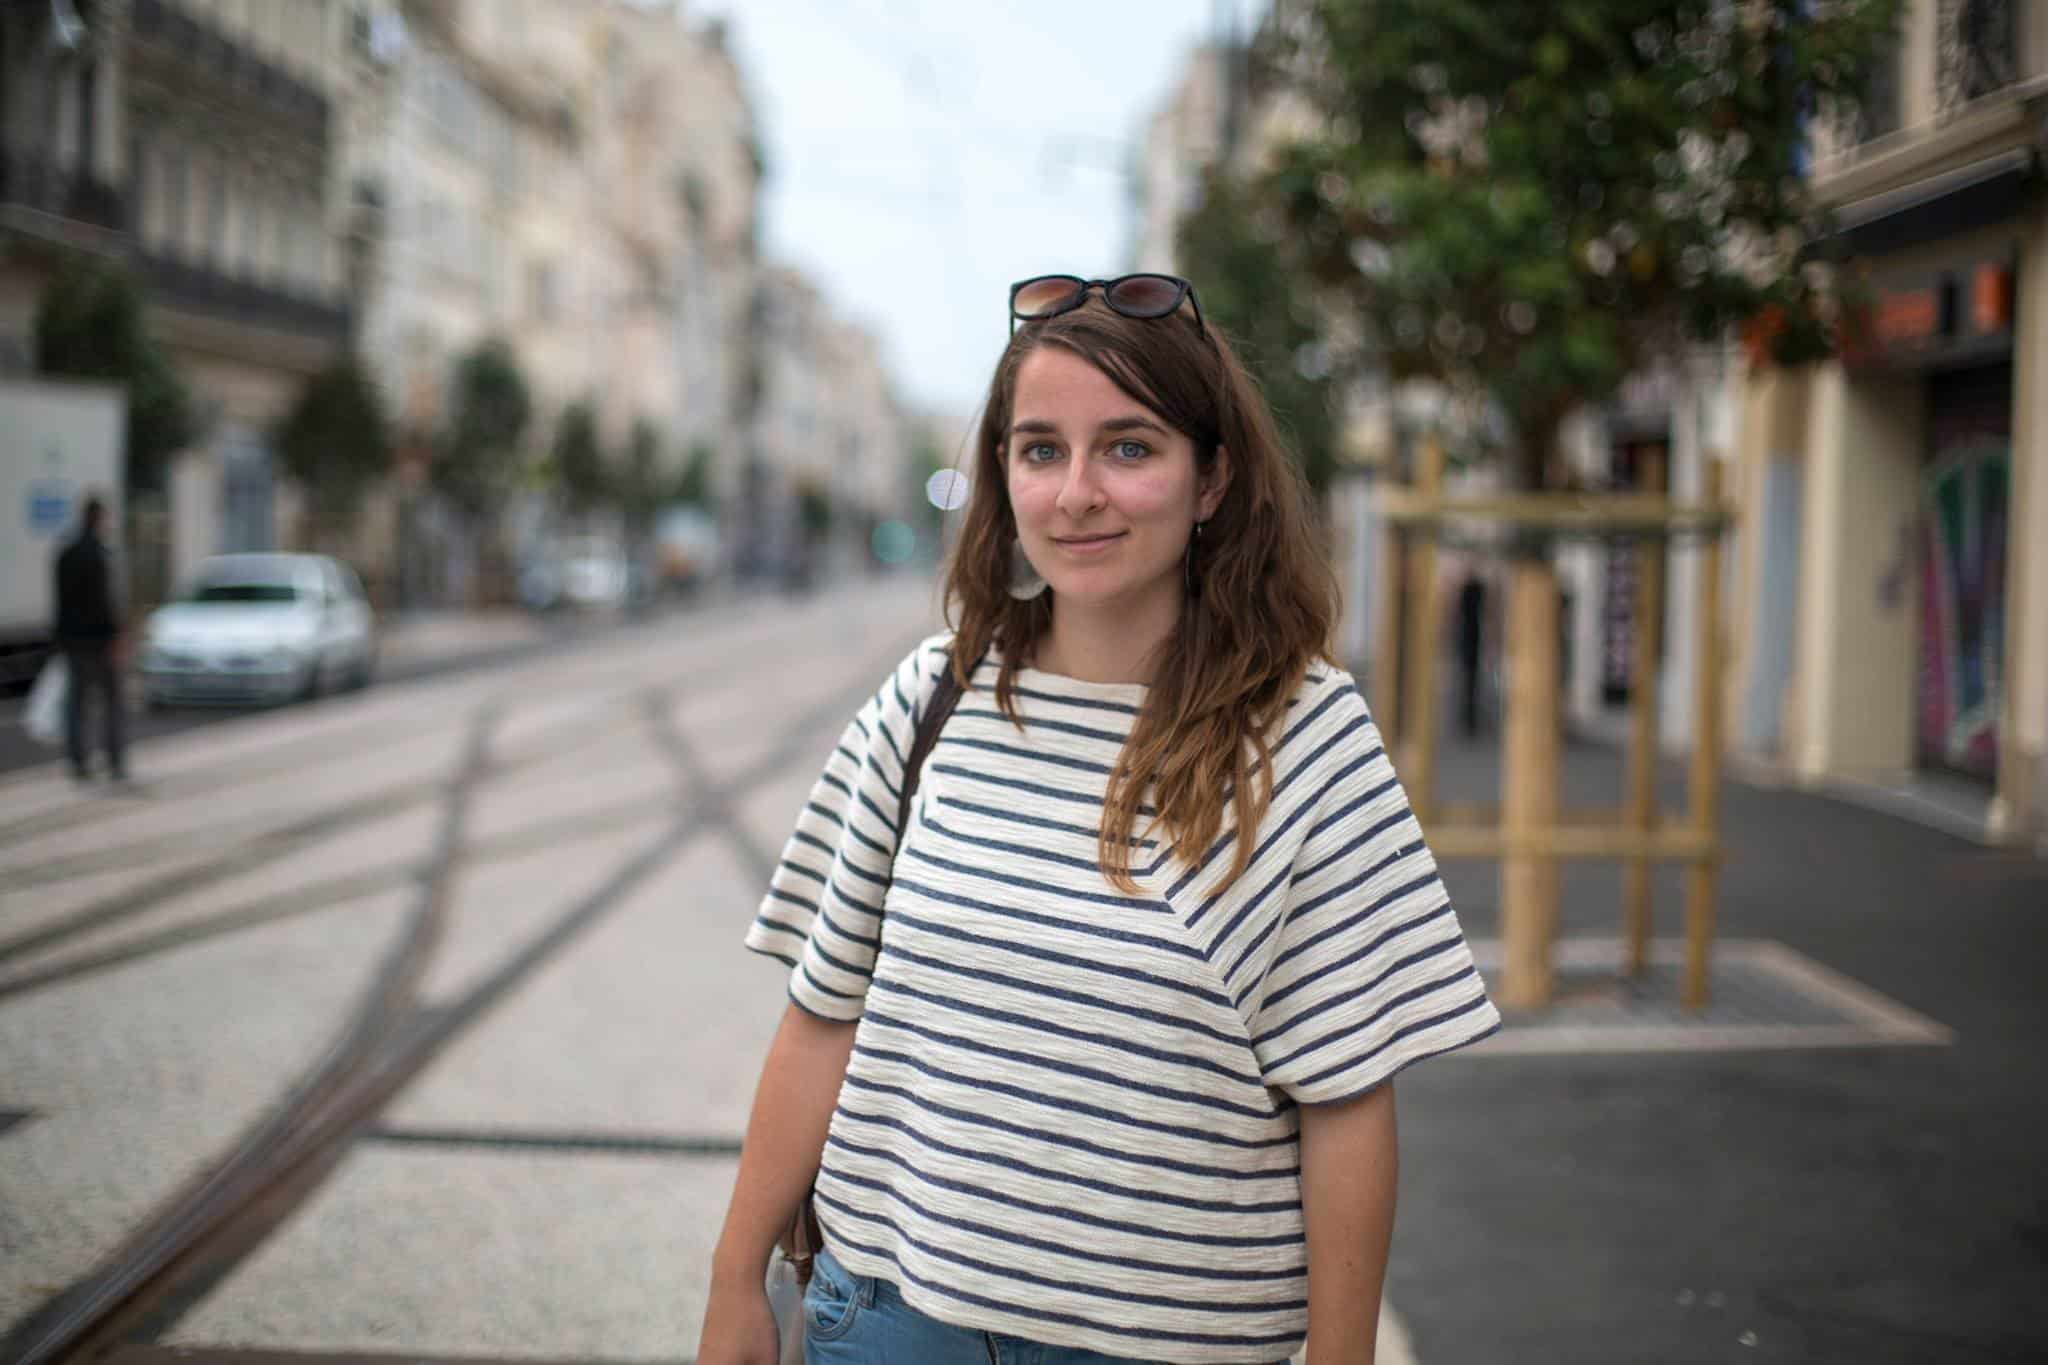 Humans of Marseille, Le Marseillais de la semaine met en avant les migrants de tous horizons, Made in Marseille